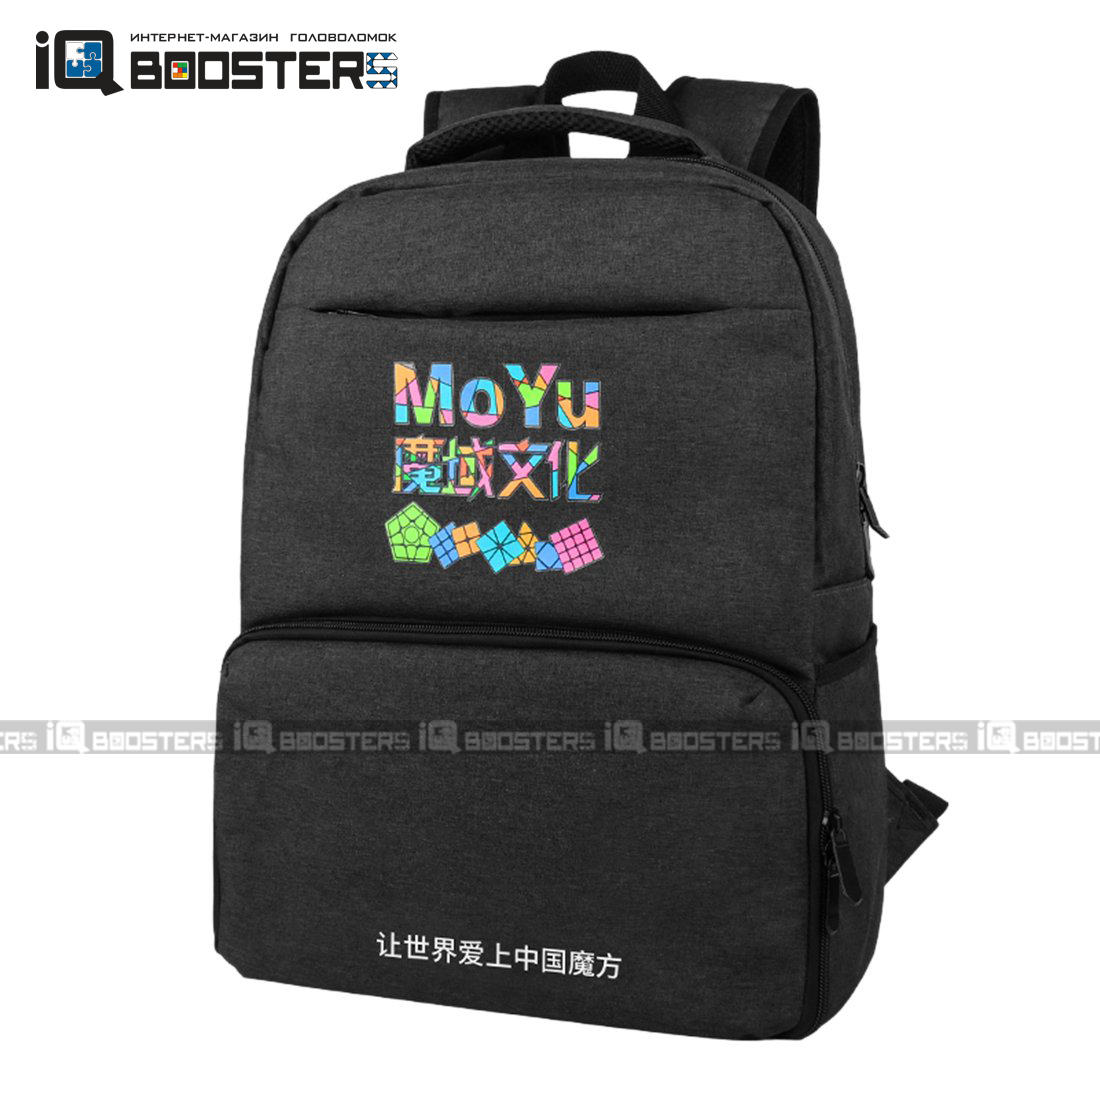 moyu_backpack_01